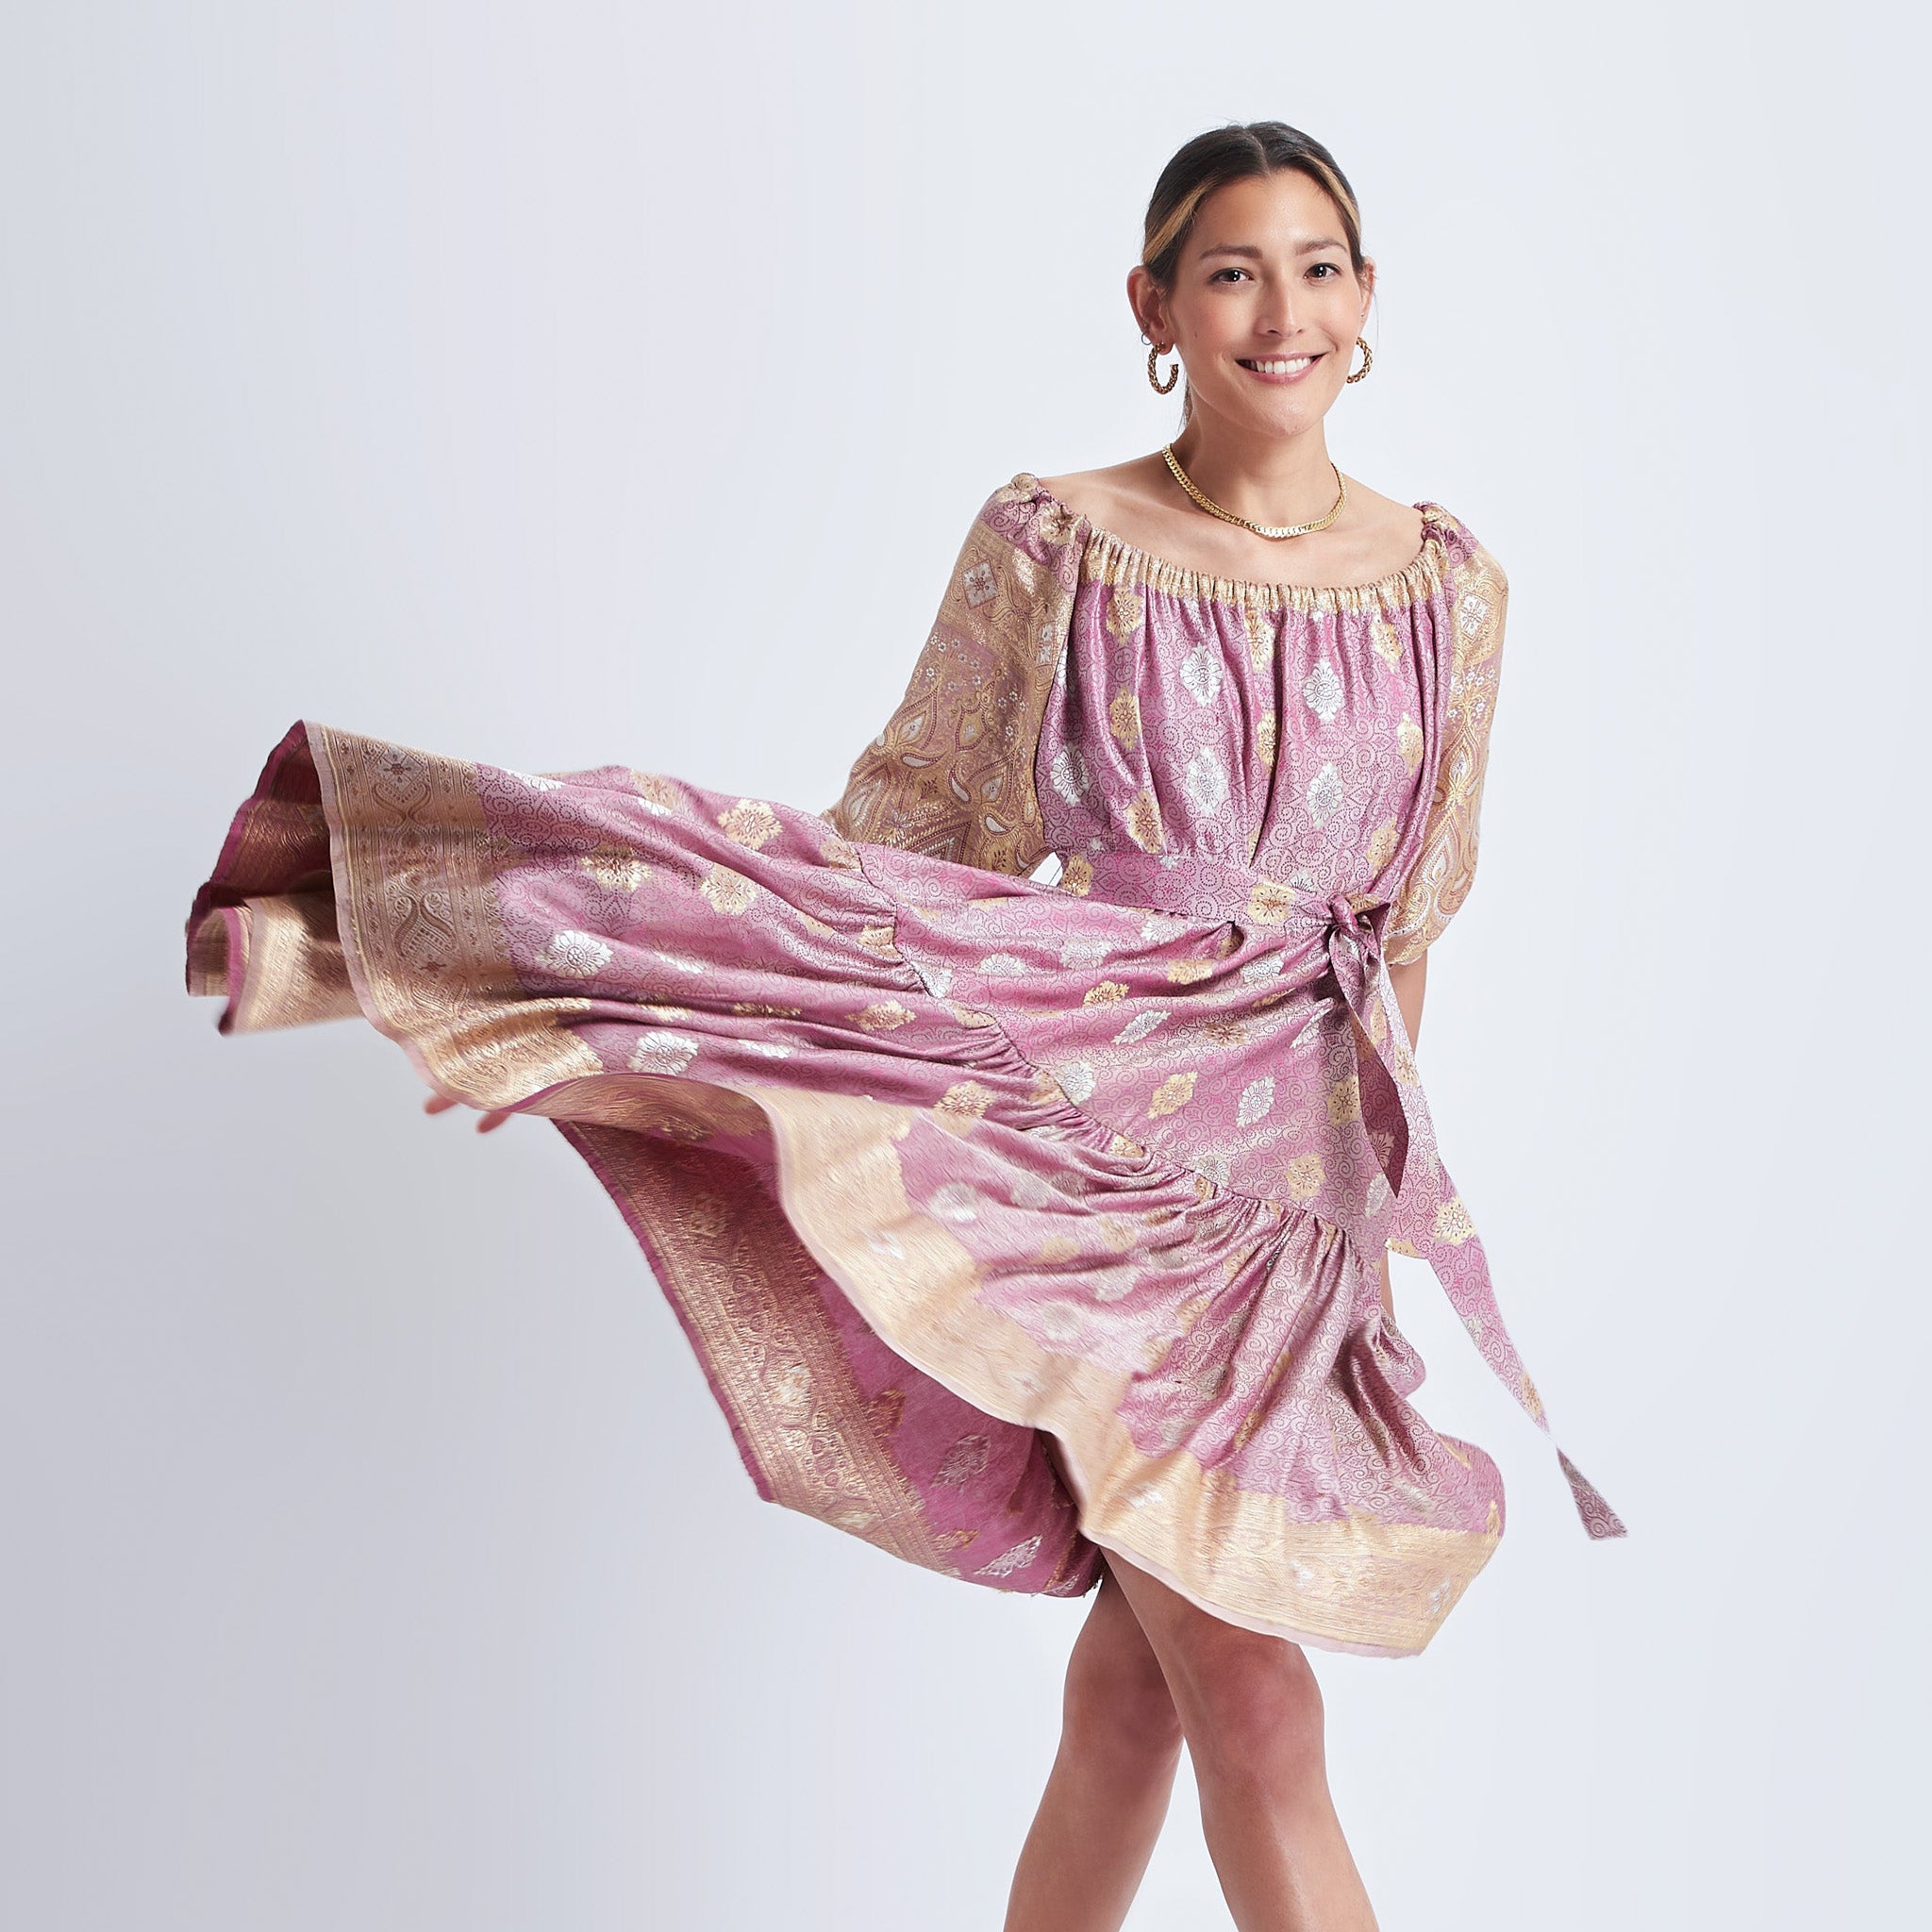 Ausus - Vintage Silk Sari Rose Quartz Pink Maxi Dress